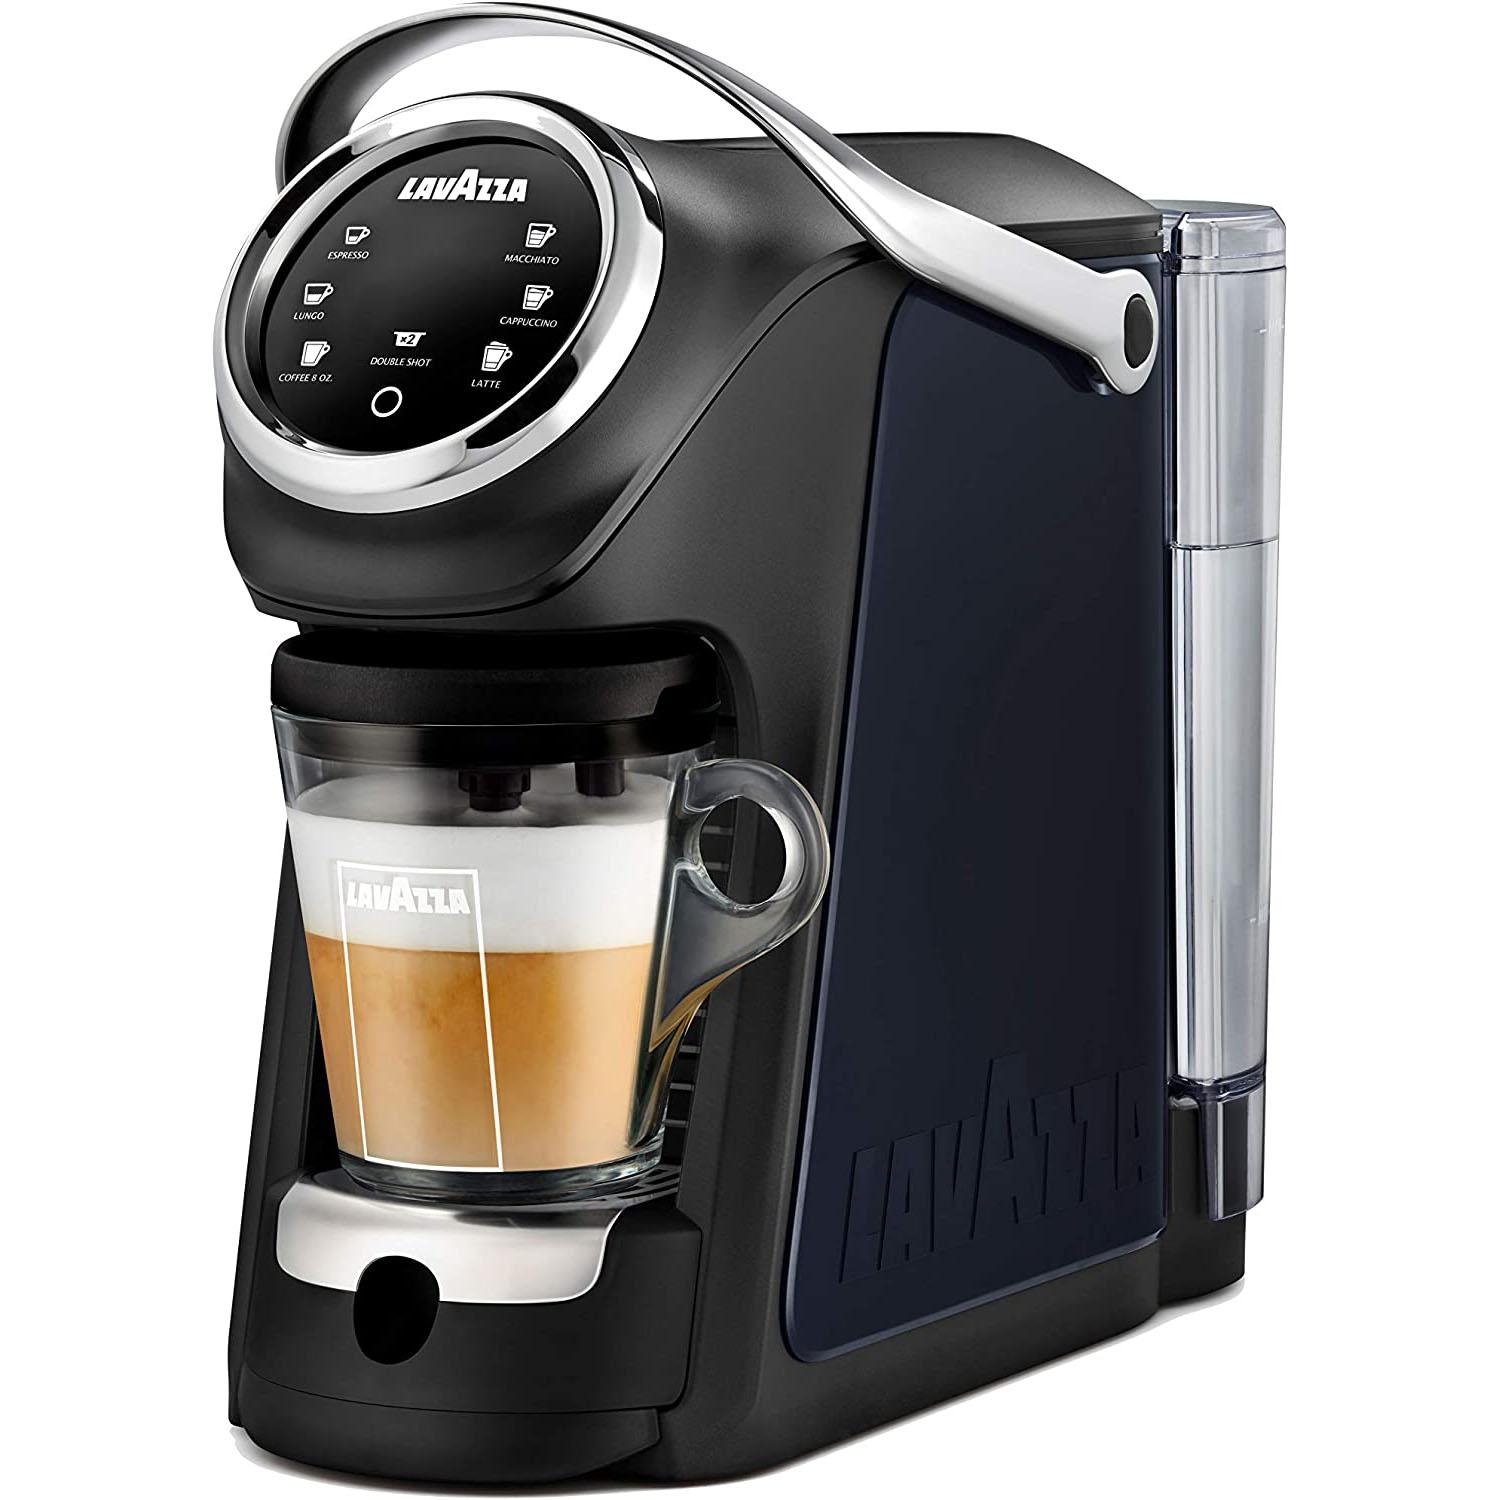 Lavazza Expert Coffee Classy Plus Single Serve Espresso Machine for $113.75 Shipped